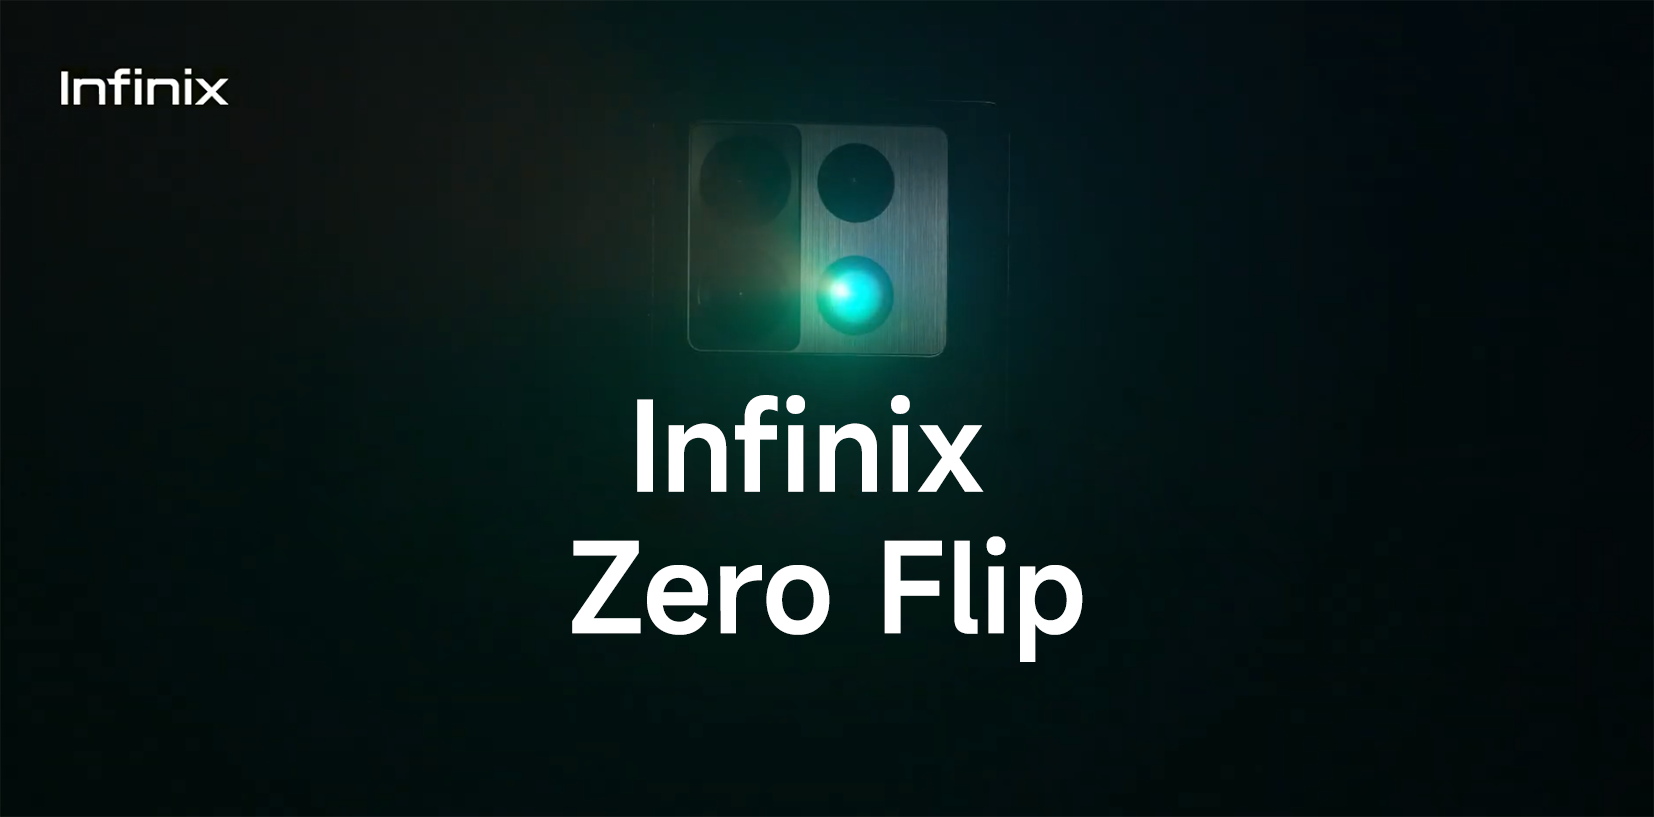 Infinix Zero Flip_1a